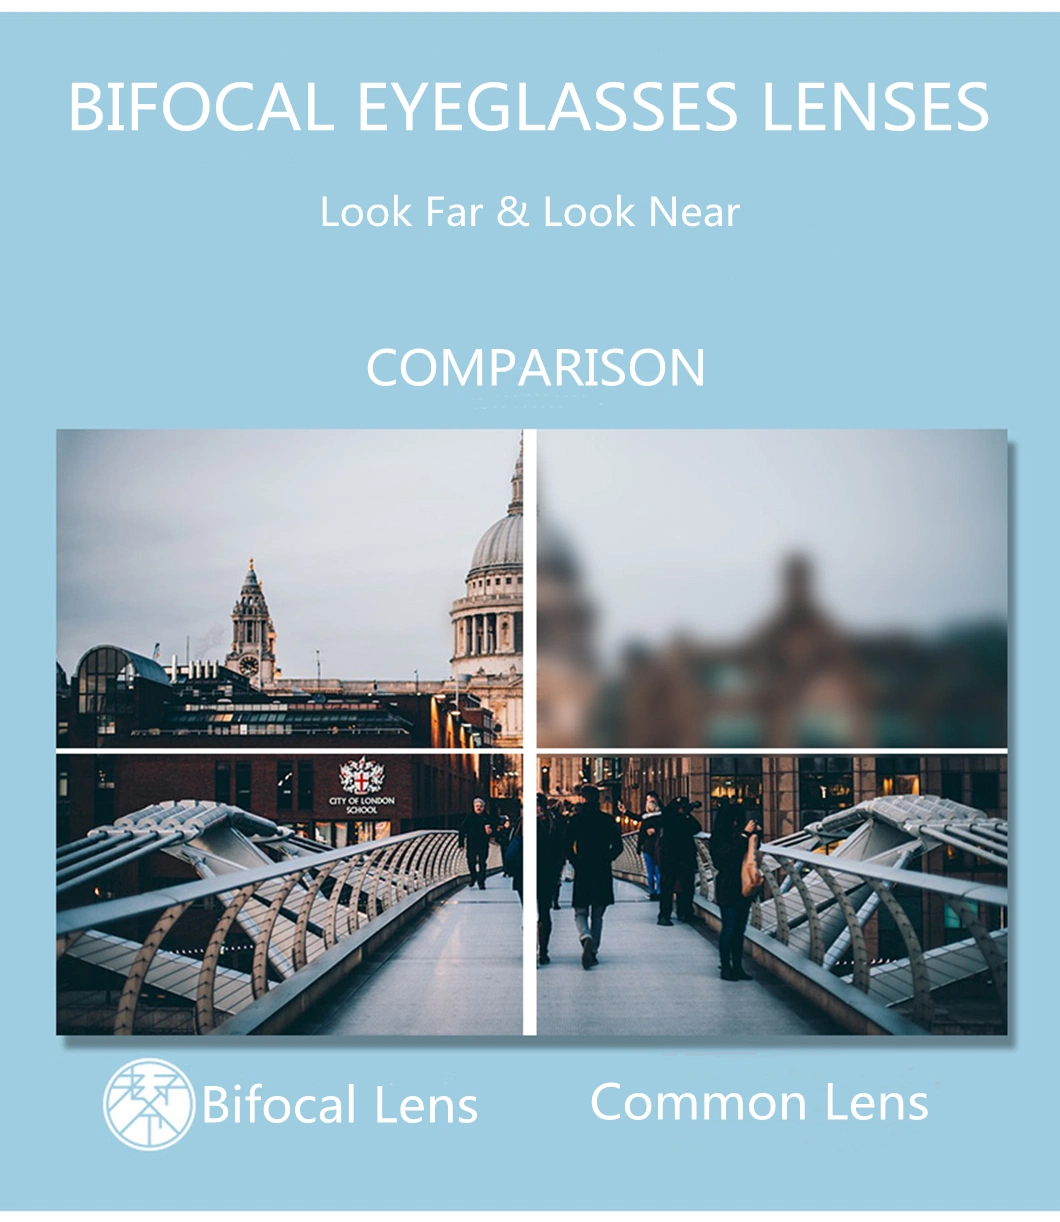 Middle Index 1.56 Flat Top Bifocal UC Lens FT-28 Uncoated Eyeglasses Lens